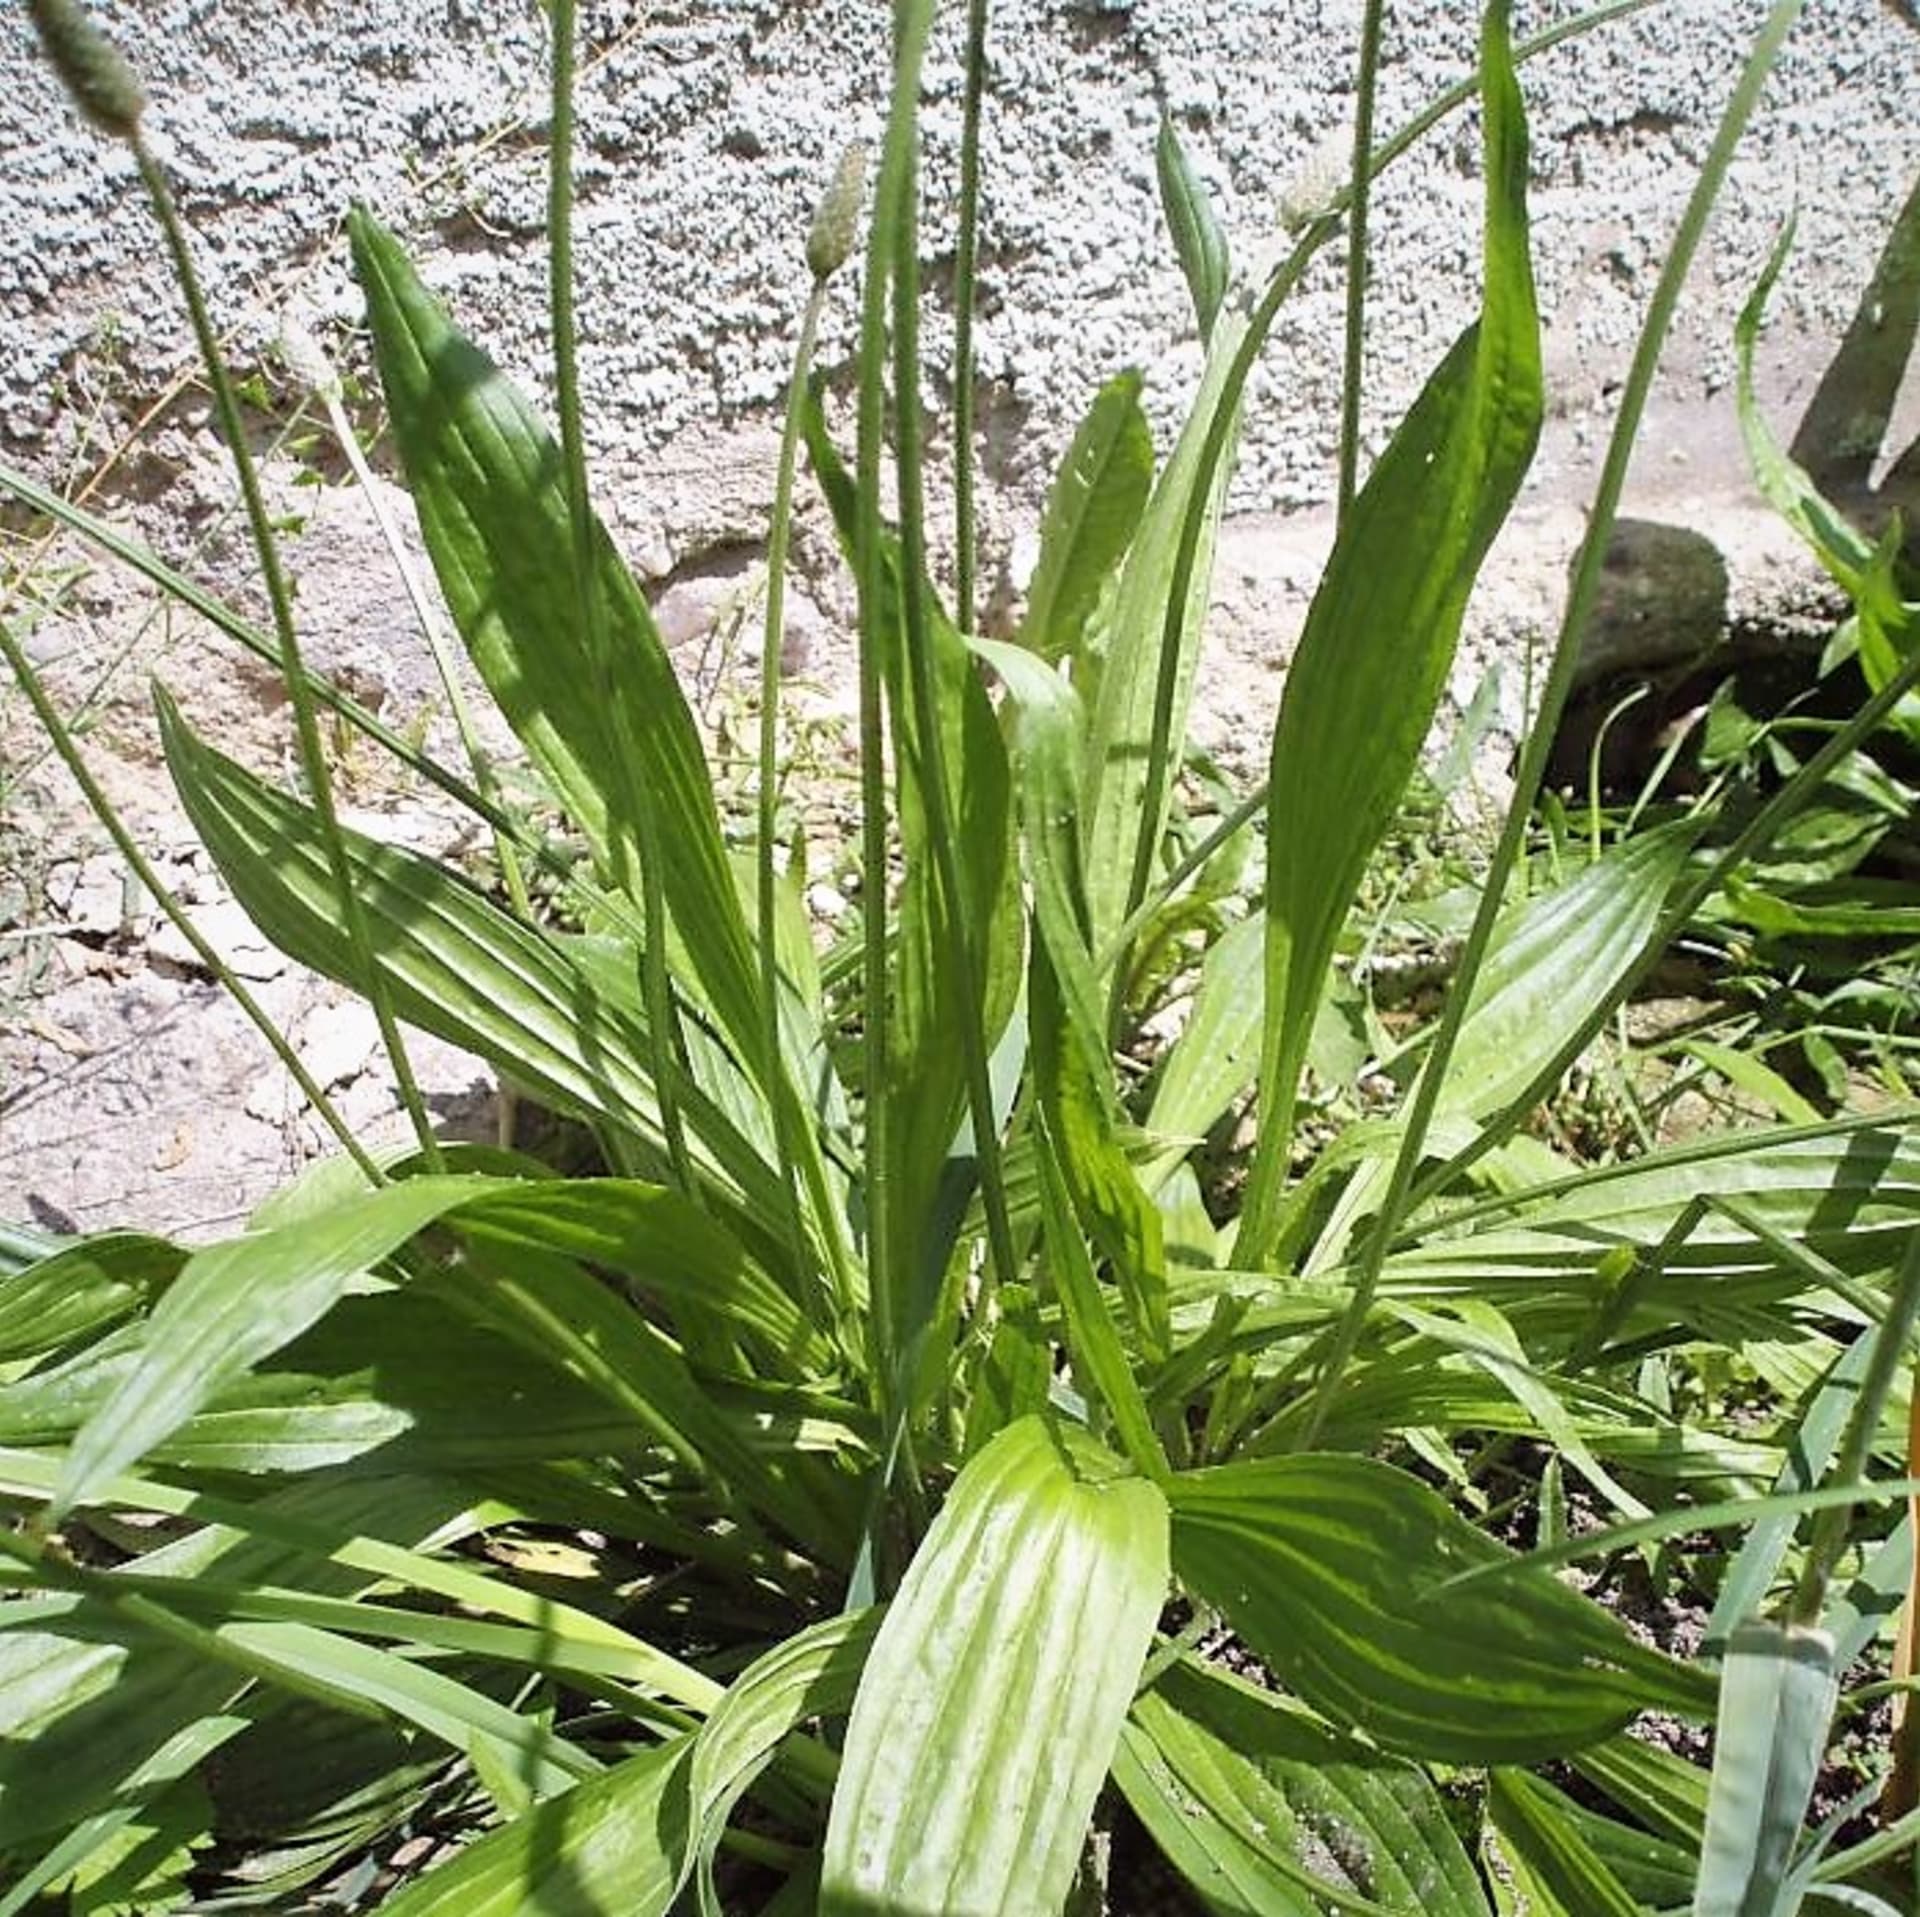 Jitrocel kopinatý (Plantago lanceolata) je všudypřítomná vytrvalá plevelná bylina s růžicí vzpřímených a špičatých listů. Řadí se k nejstarším a nejrozšířenějším léčivým rostlinám, je uznávaným přírodním lékem proti kašli a na hojení ran. 